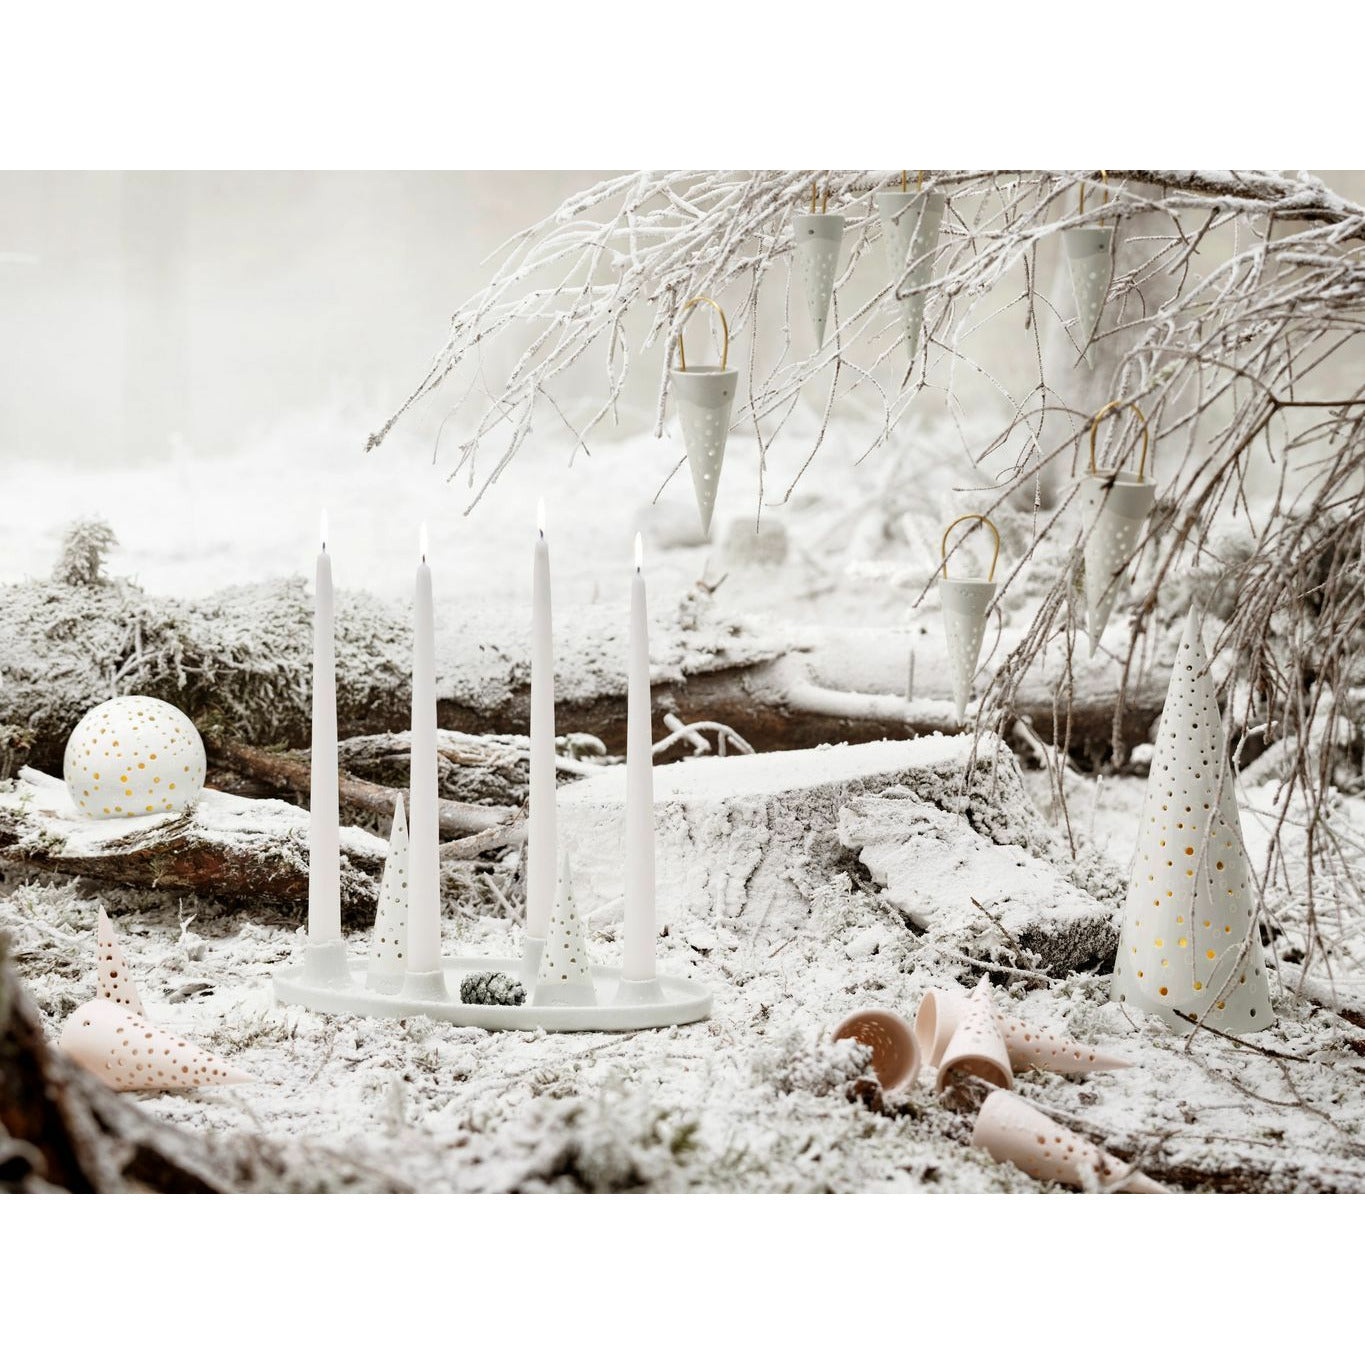 Kähler Nobili juletimmer 5x18,5 cm, snehvid